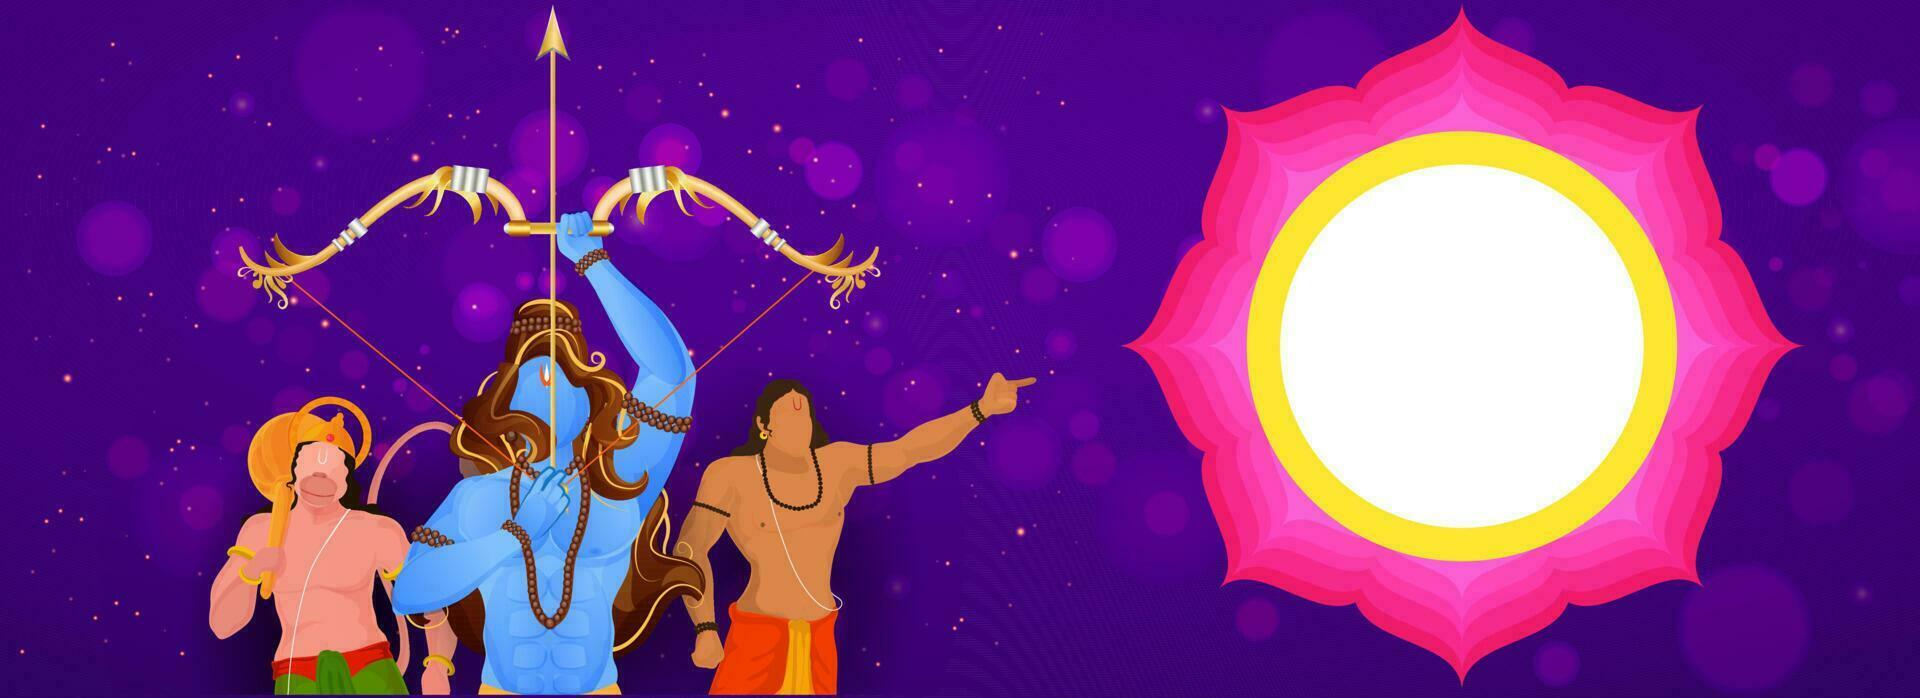 indù mitologia signore rama assunzione un scopo con hanuman, lakshman personaggio e vuoto mandala telaio su viola bokeh sfondo. vettore